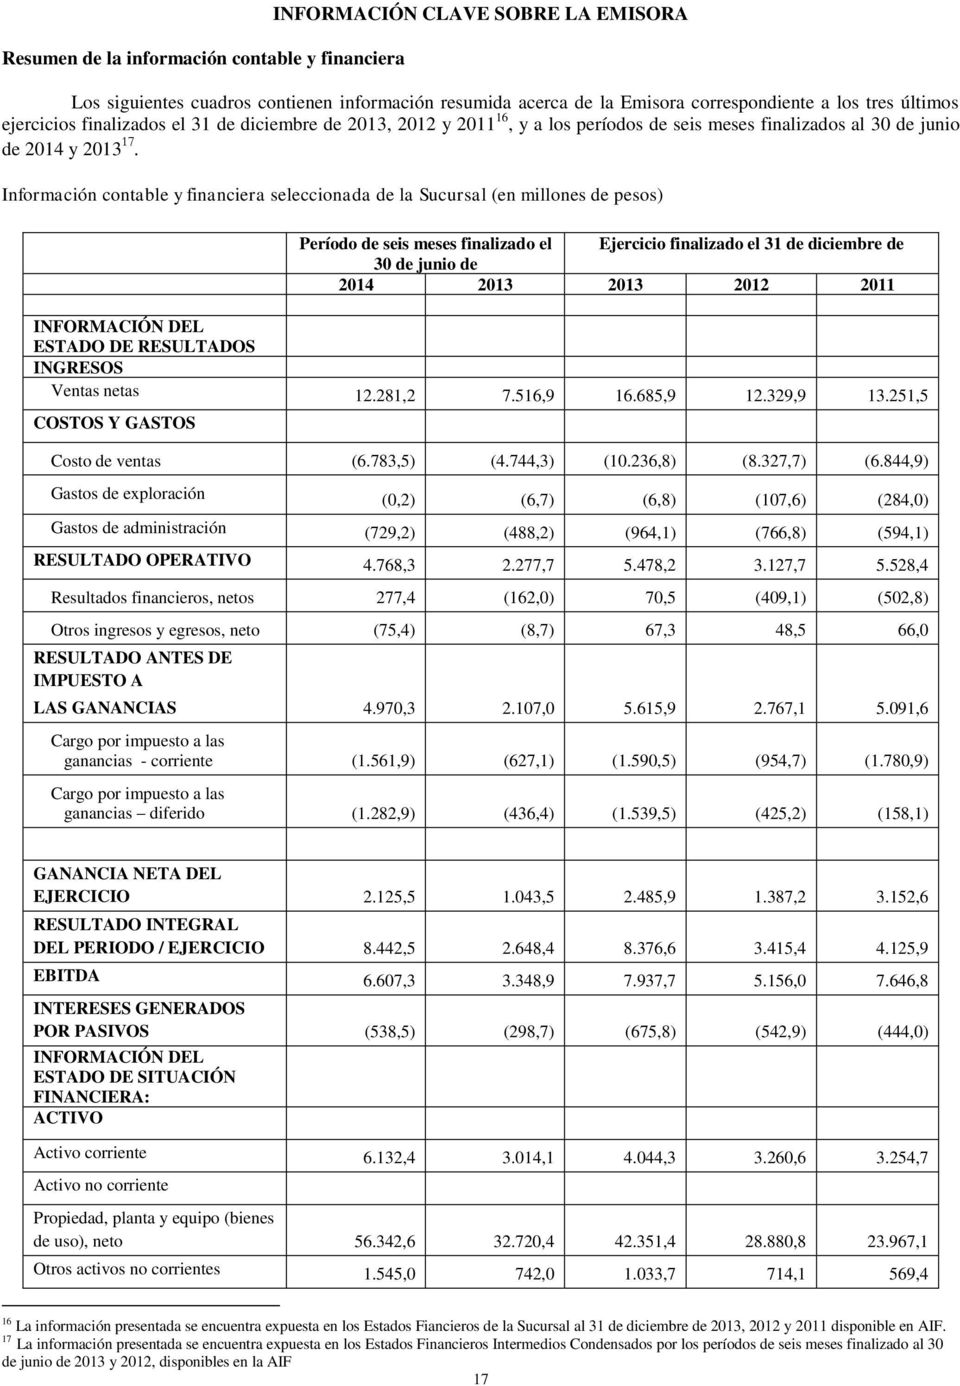 Información contable y financiera seleccionada de la Sucursal (en millones de pesos) Período de seis meses finalizado el Ejercicio finalizado el 31 de diciembre de 30 de junio de 2014 2013 2013 2012